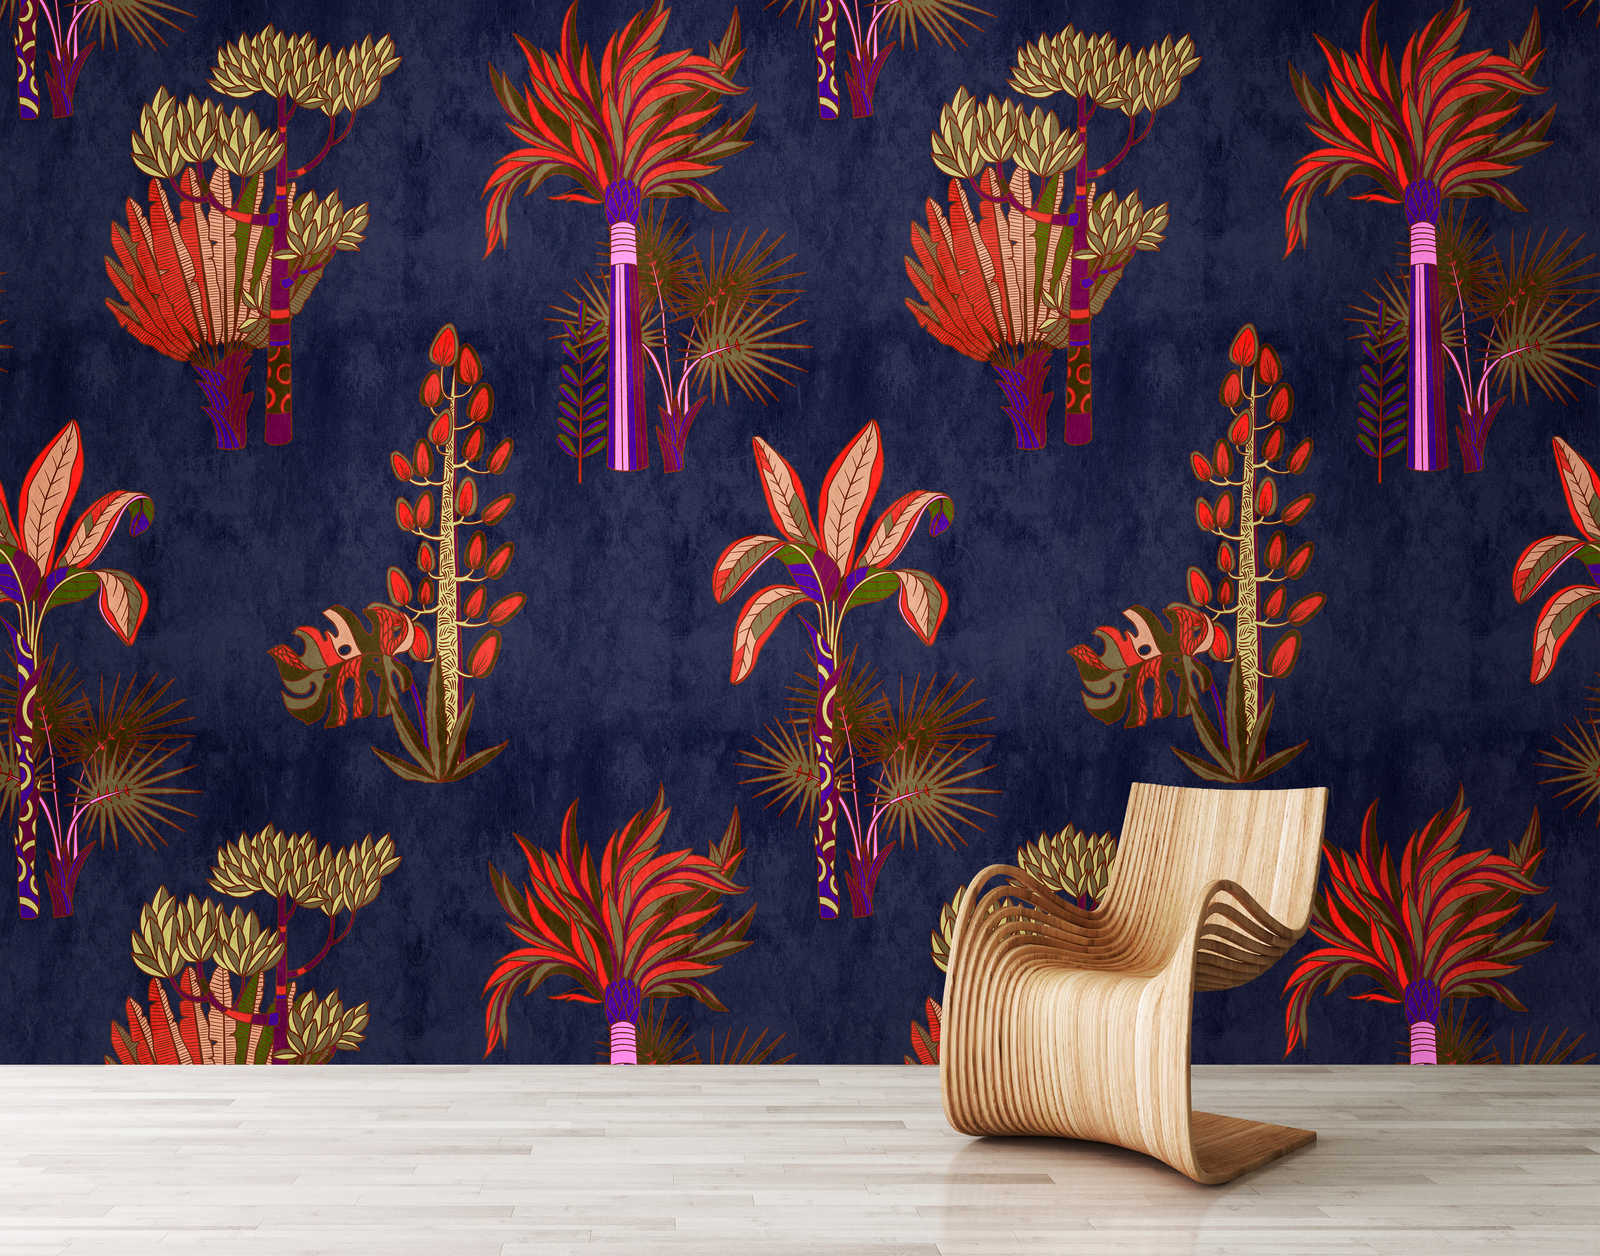             Lagos 2 - Palm Tree Wallpaper African Syle in heldere kleuren
        